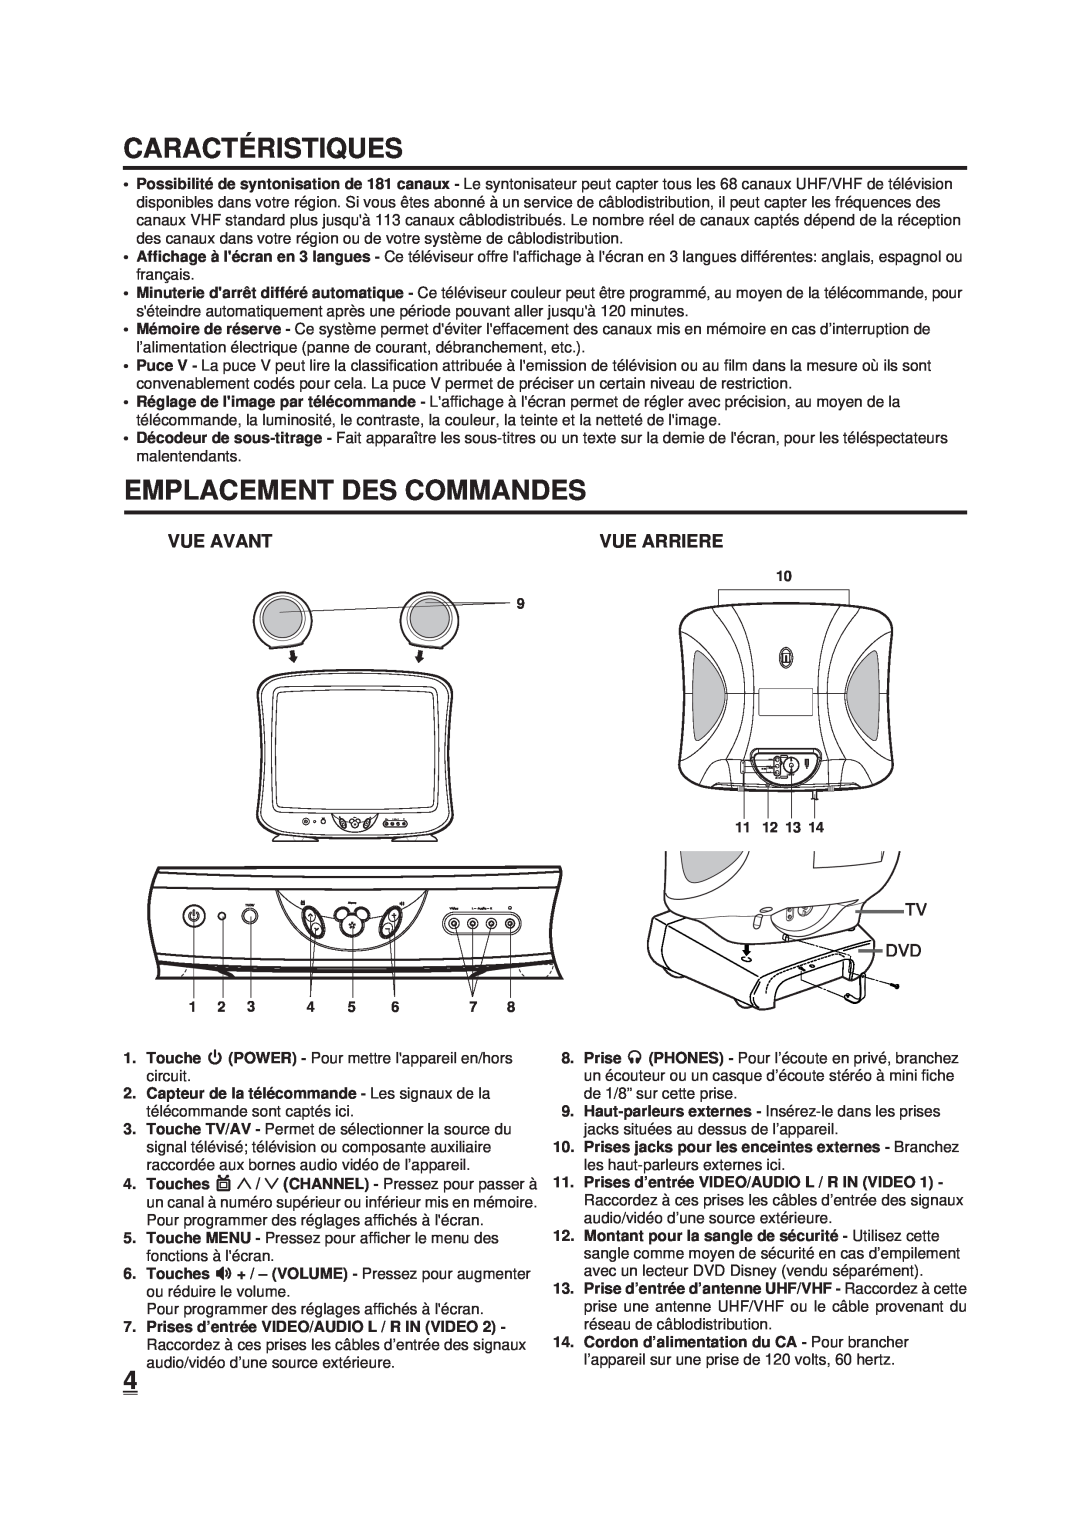 Memorex DT1900-C manual Caracté Ristiques, Emplacement Des Commandes, Vue Avant, Vue Arriere 